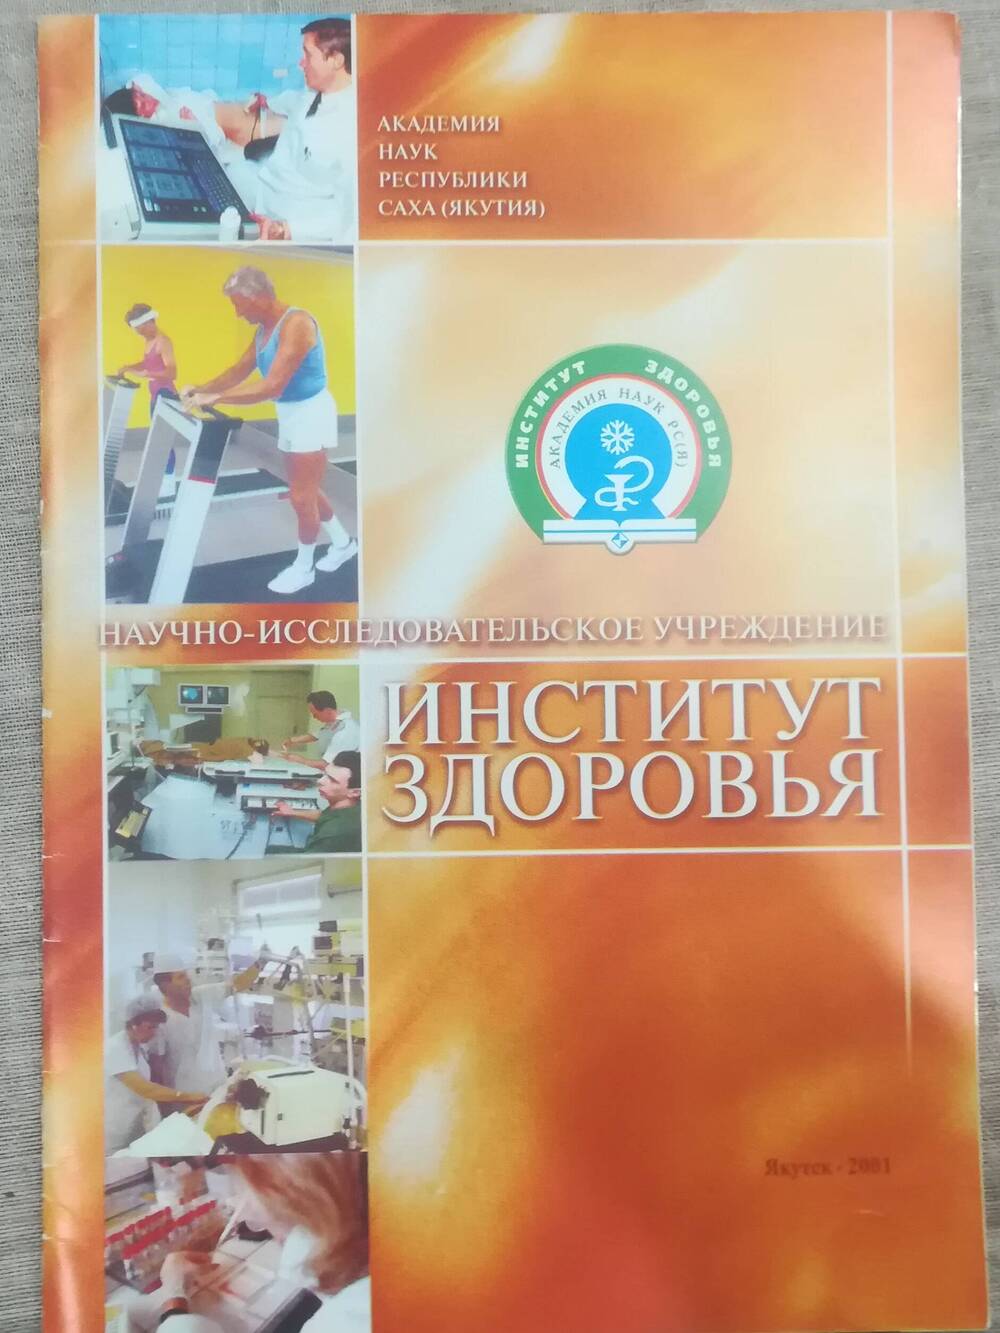 Буклет Научно-исследовательское учреждение - Институт здоровья.